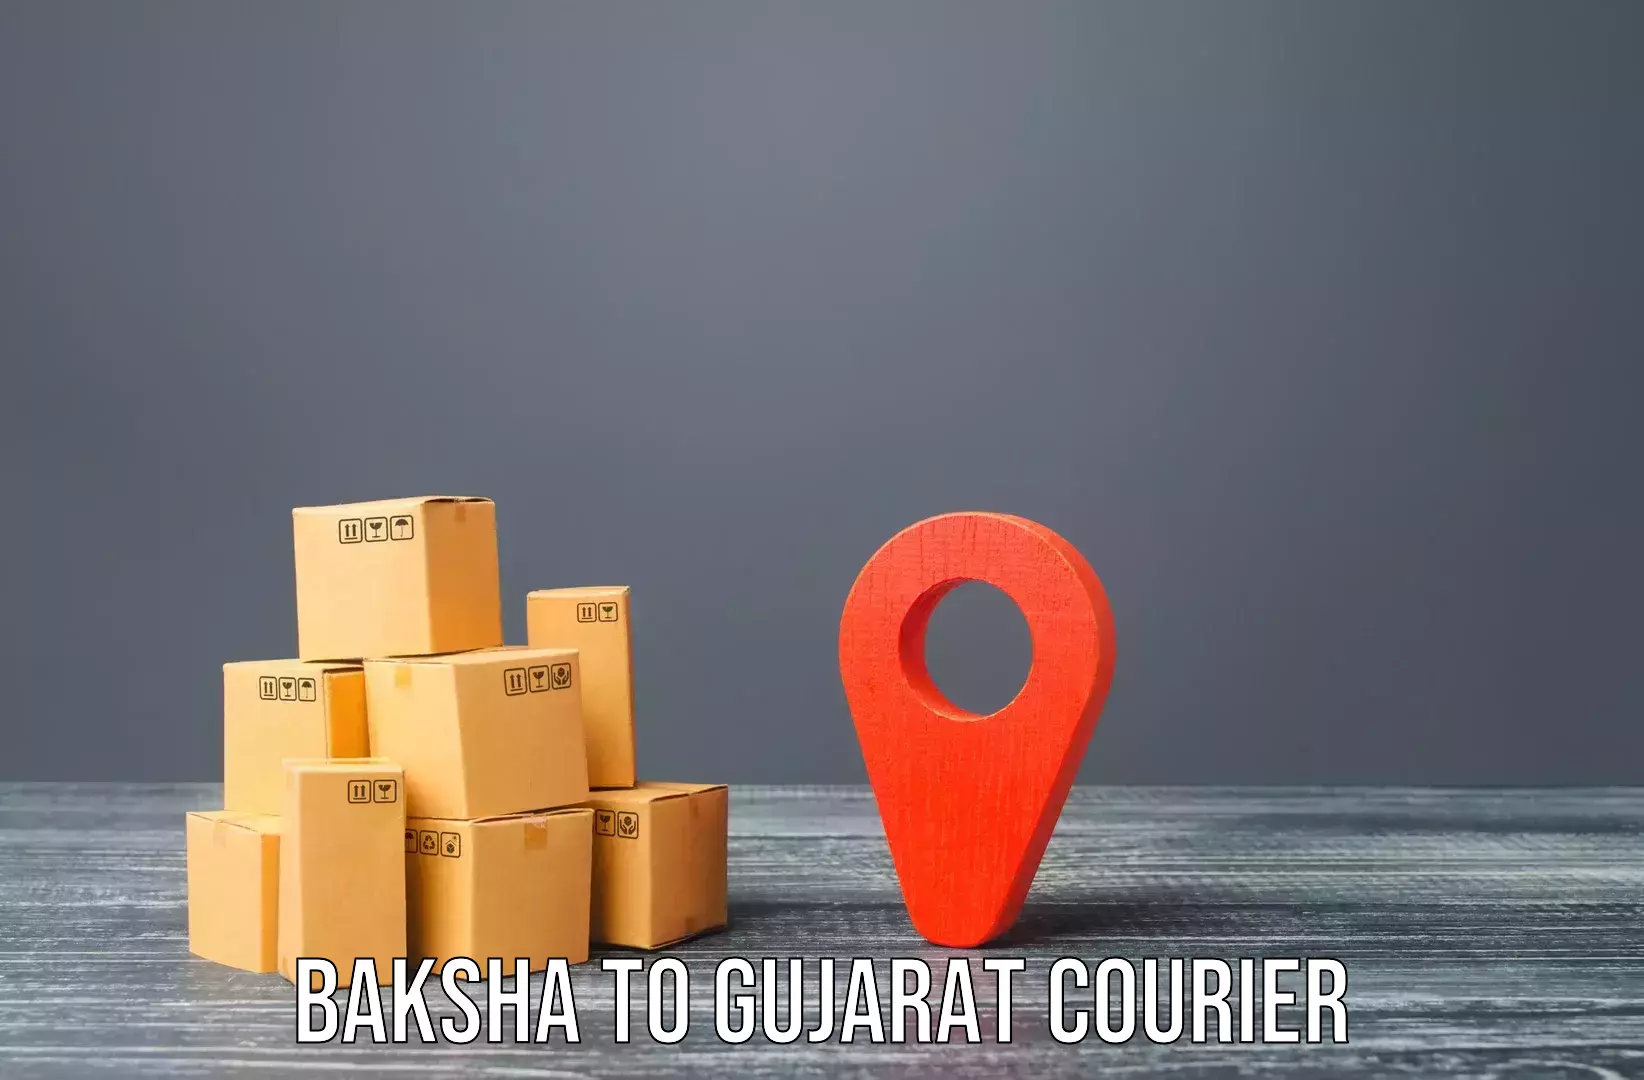 Home shifting experts Baksha to Dhasa